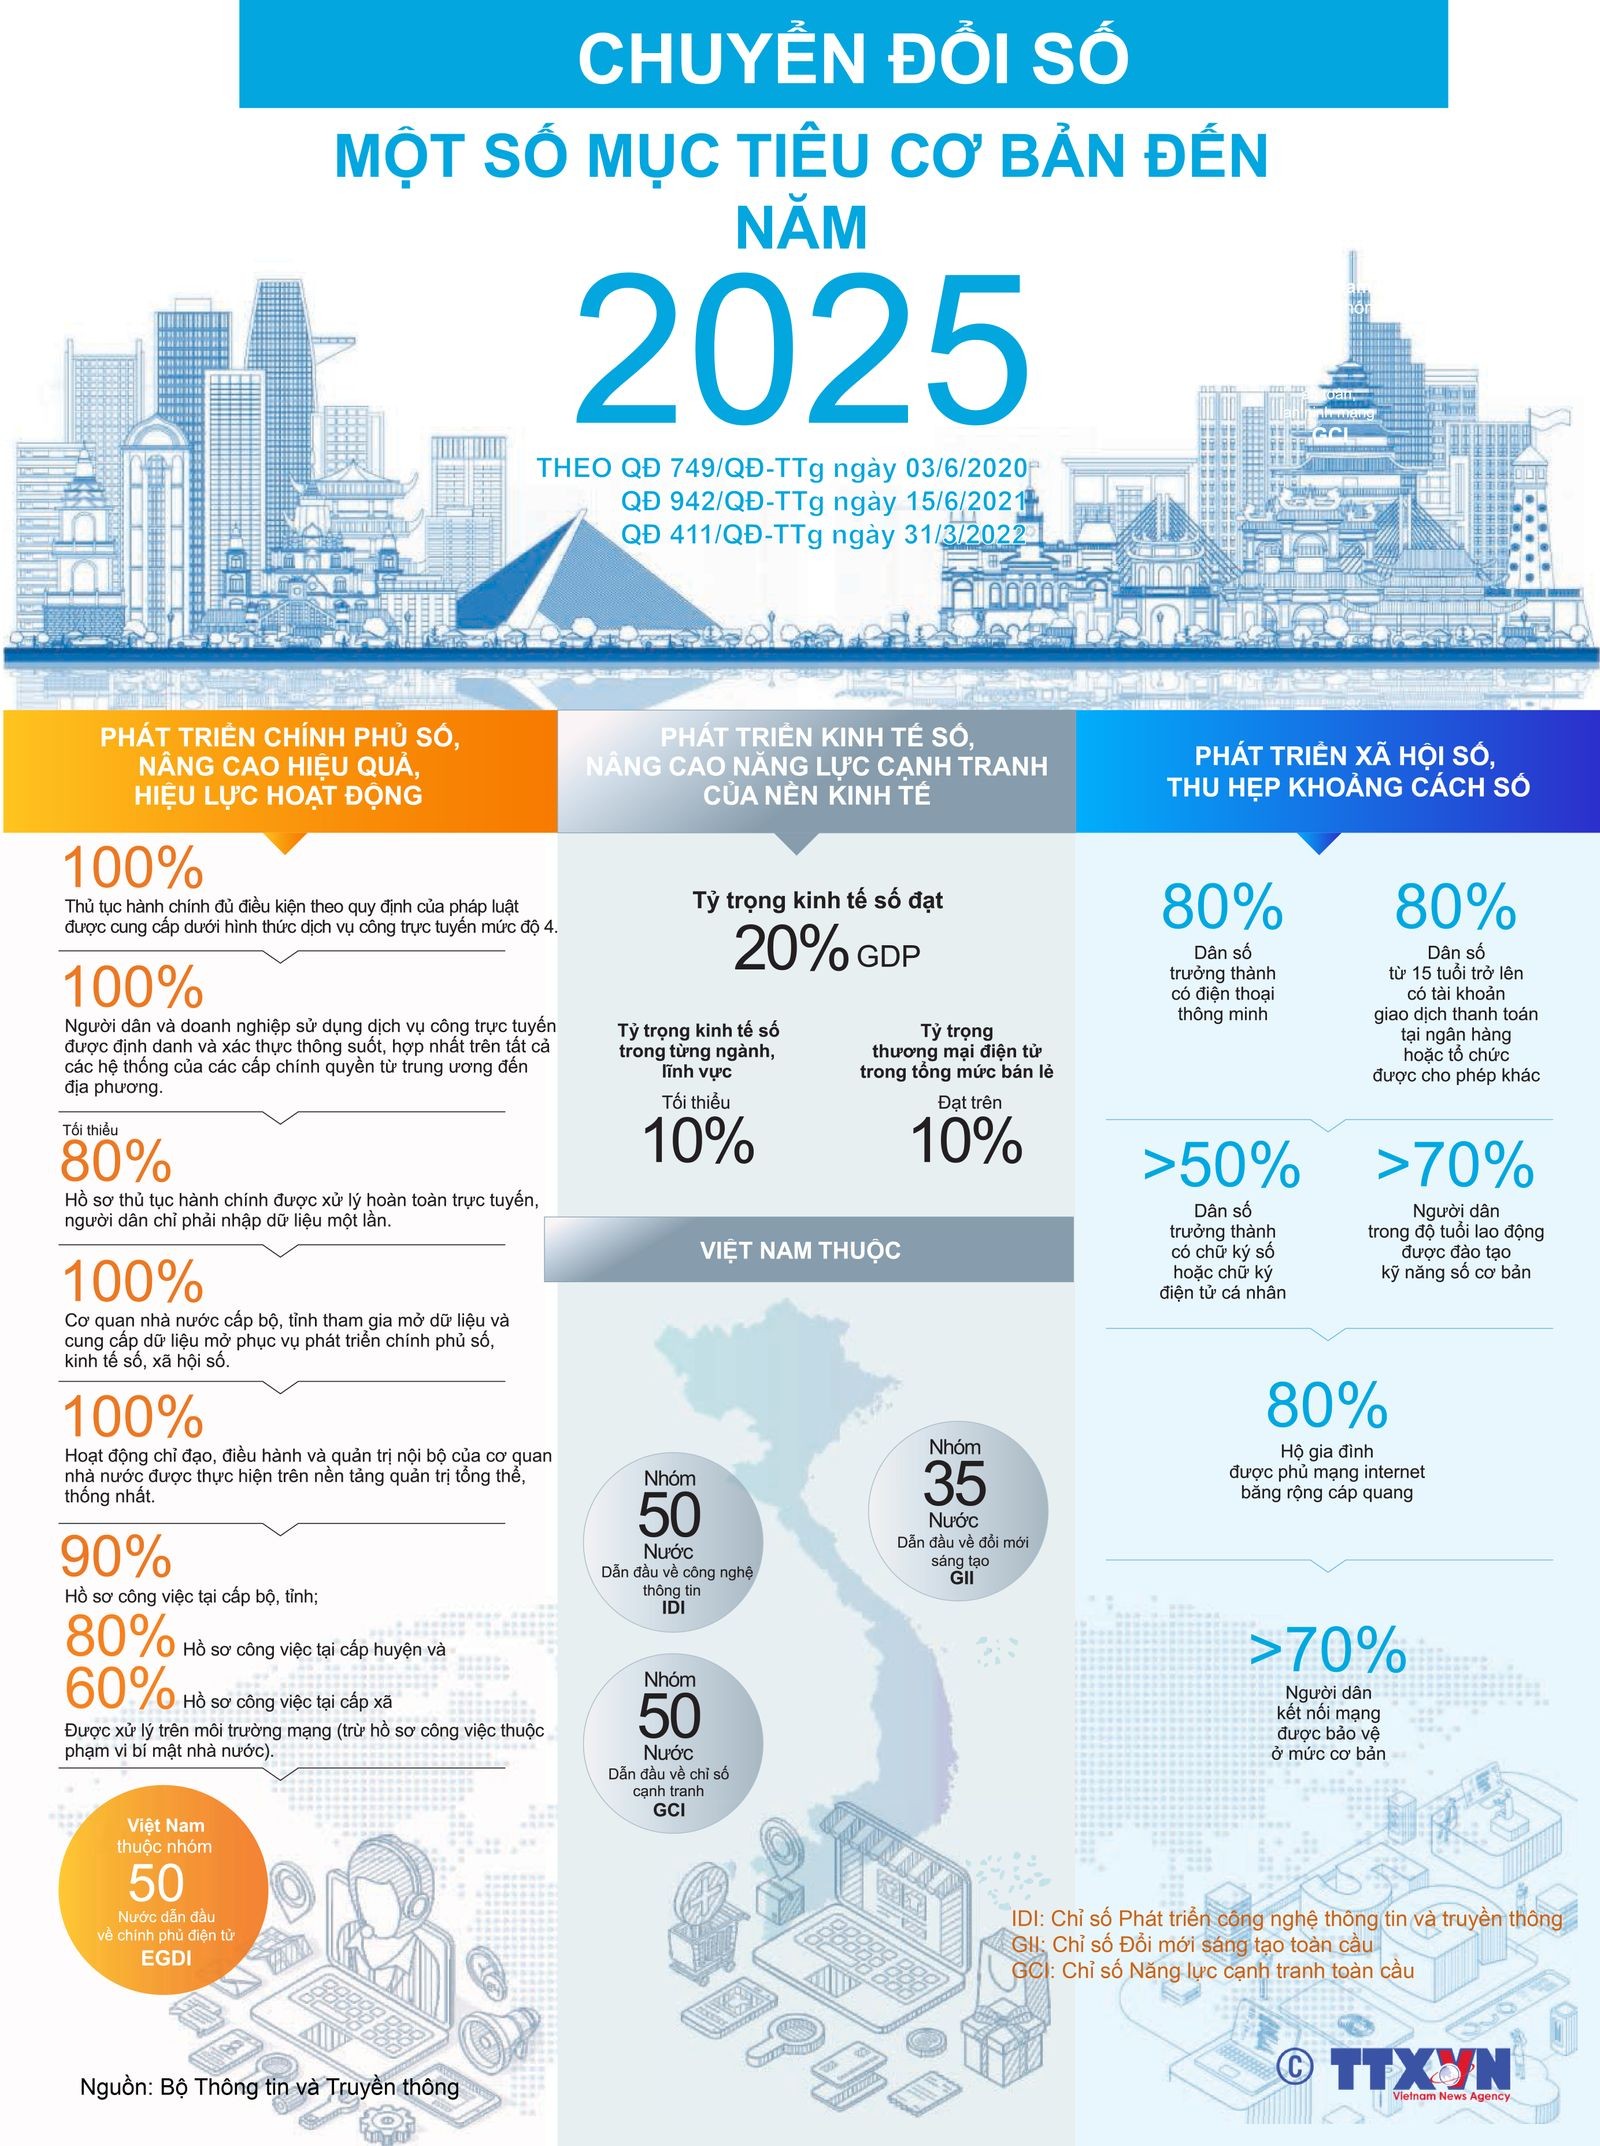 (Interactive) Chuyển đổi số: Một số mục tiêu cơ bản đến năm 2025